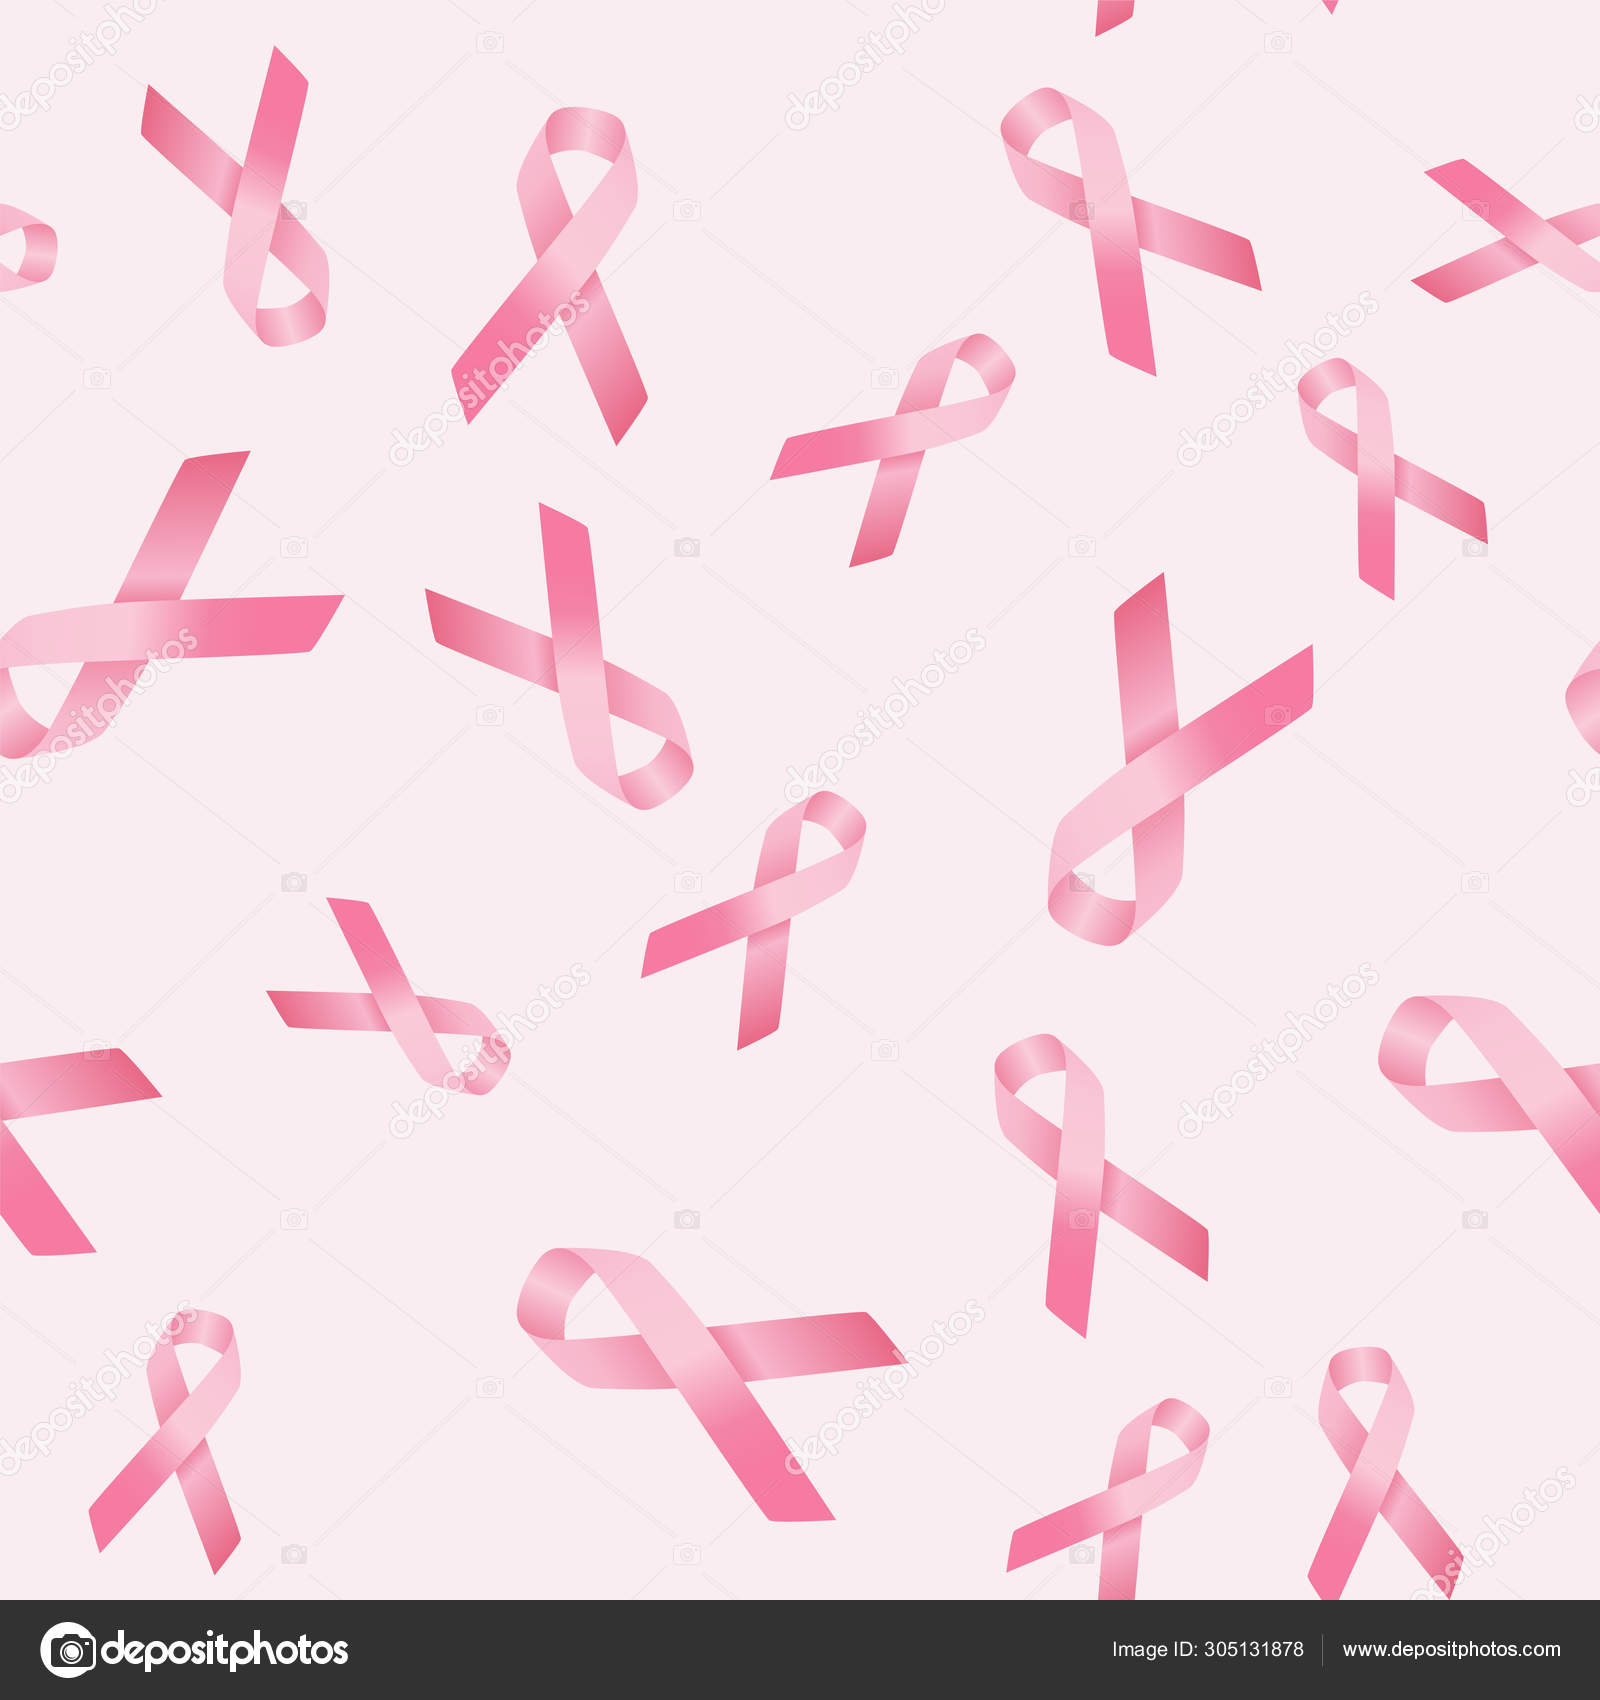 Sự ý thức về ung thư vú - hãy cùng nhau tìm hiểu thêm về bệnh và cách điều trị để giúp phát hiện sớm ung thư vú, cứu sống hàng nghìn người phụ nữ mỗi năm.